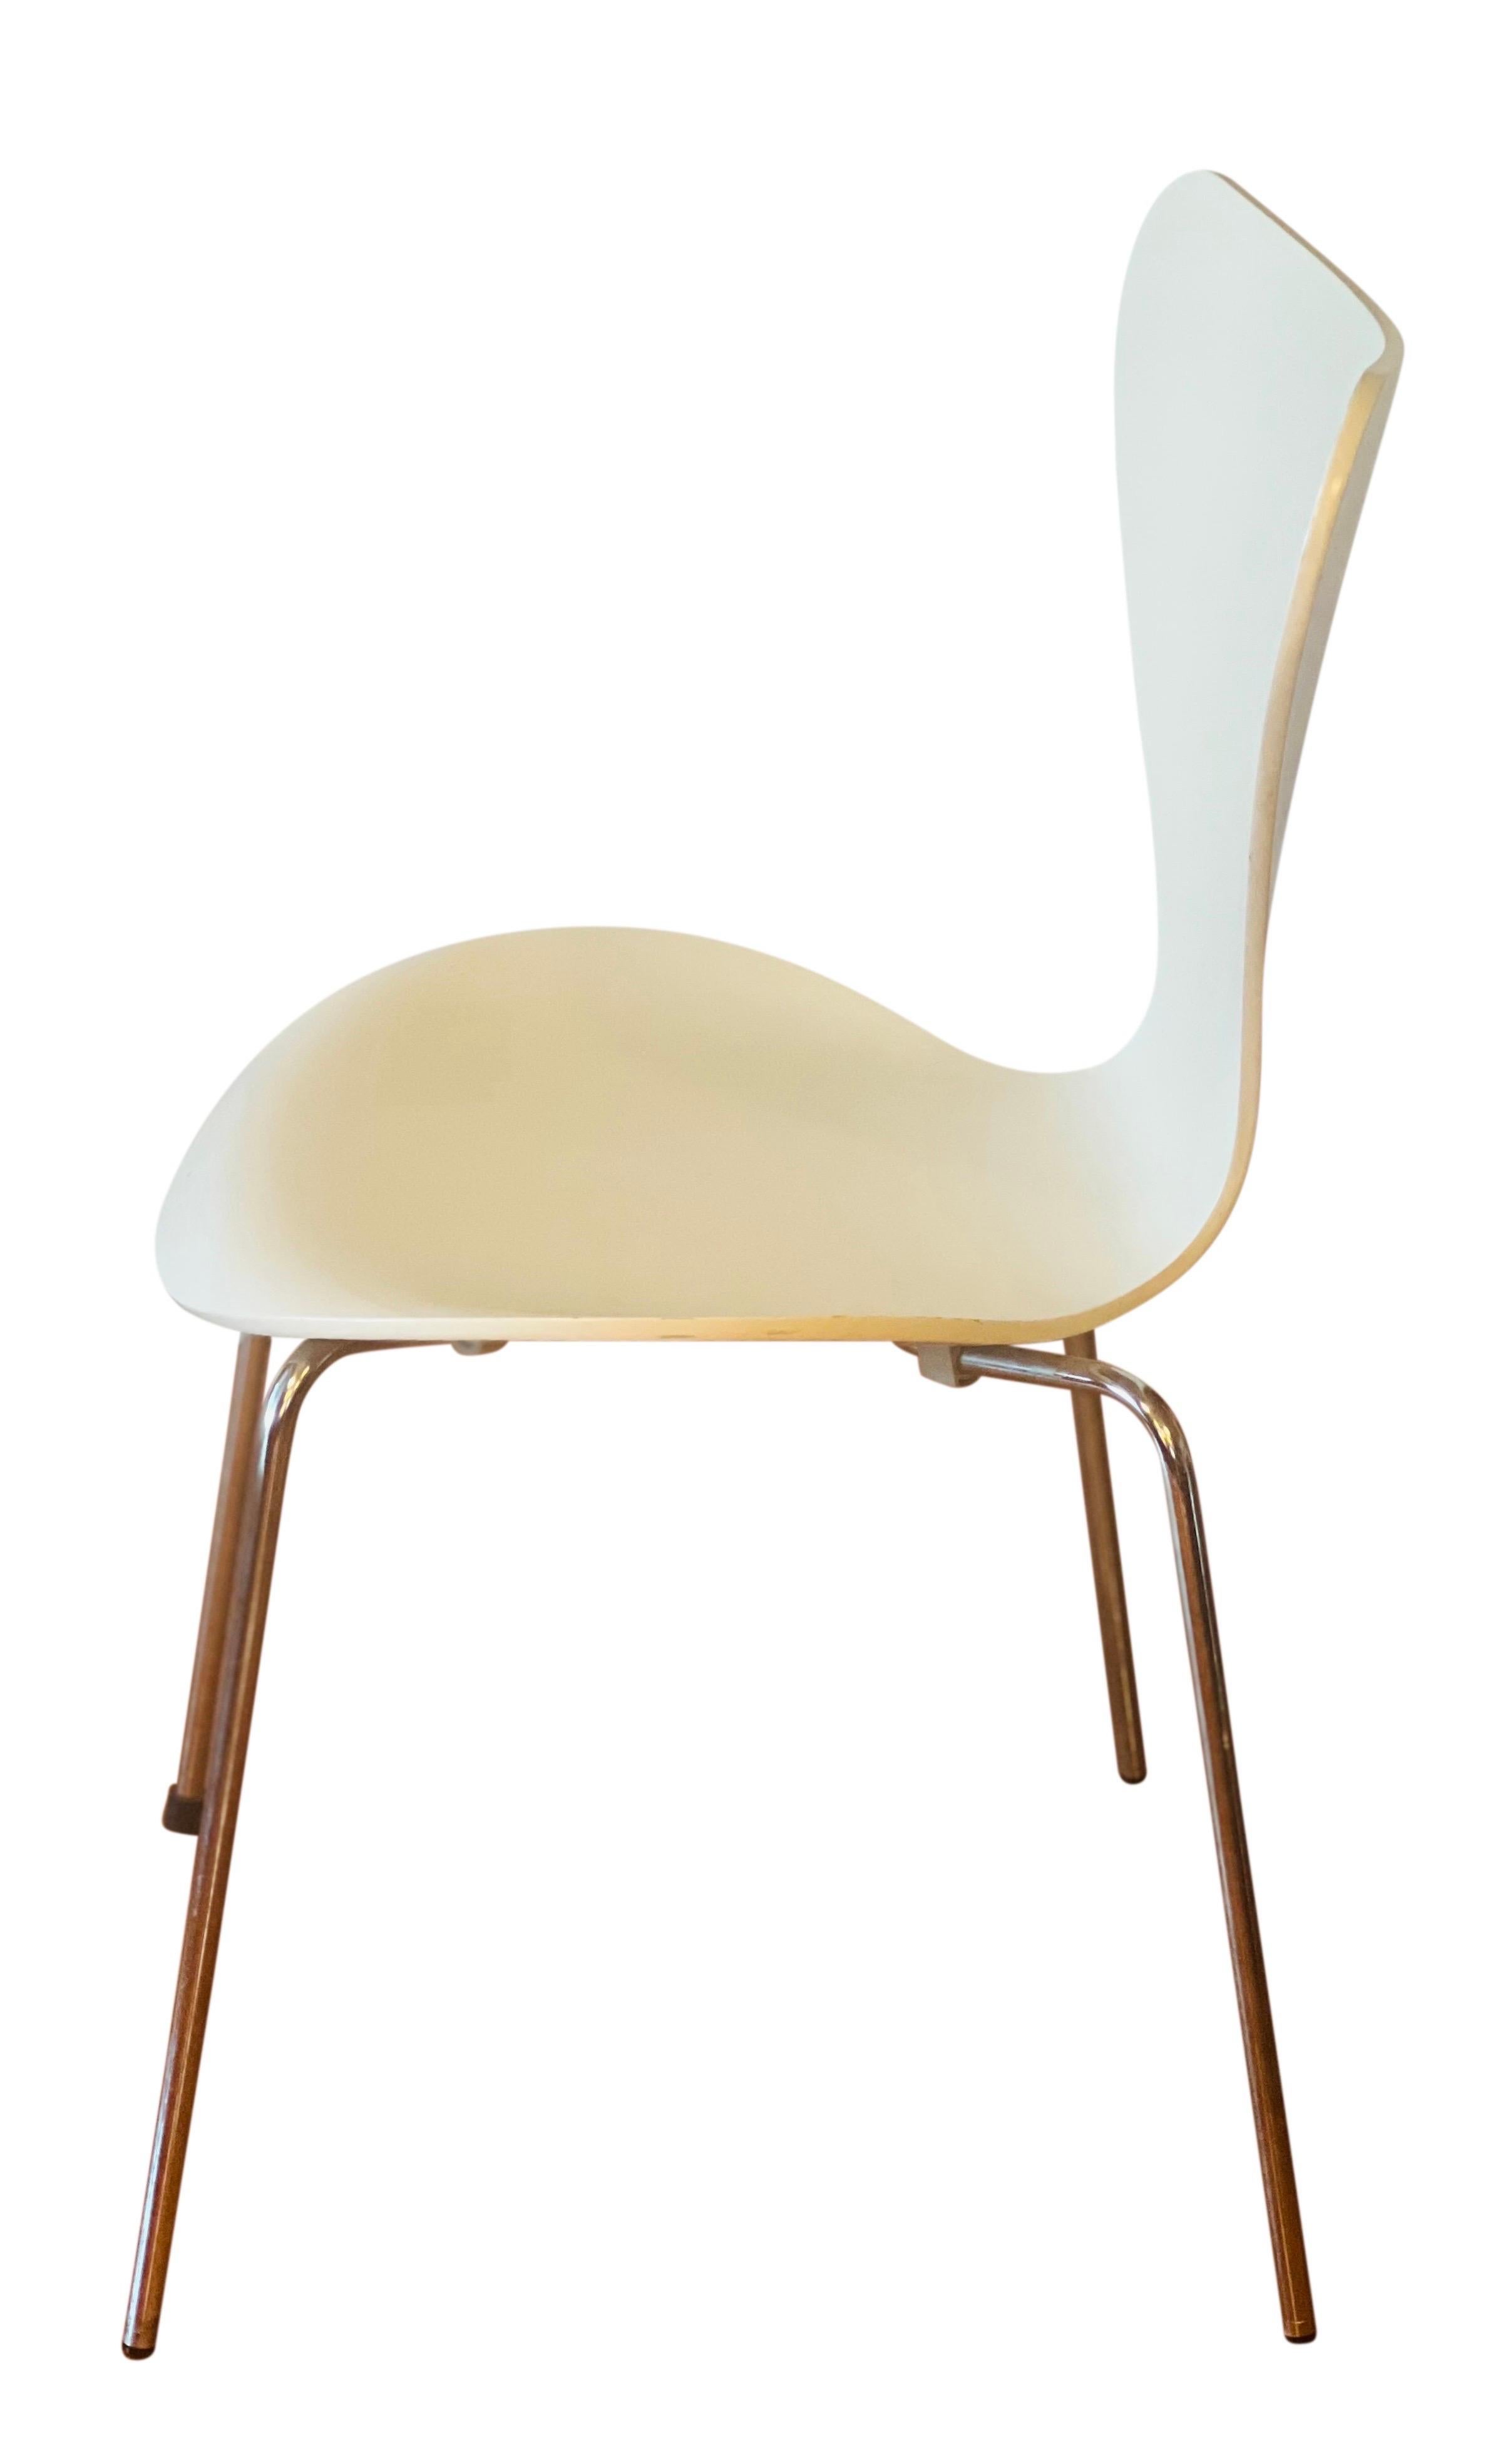 Danish Arne Jacobsen for Fritz Hansen Series 7 Chairs in White, Set of 4